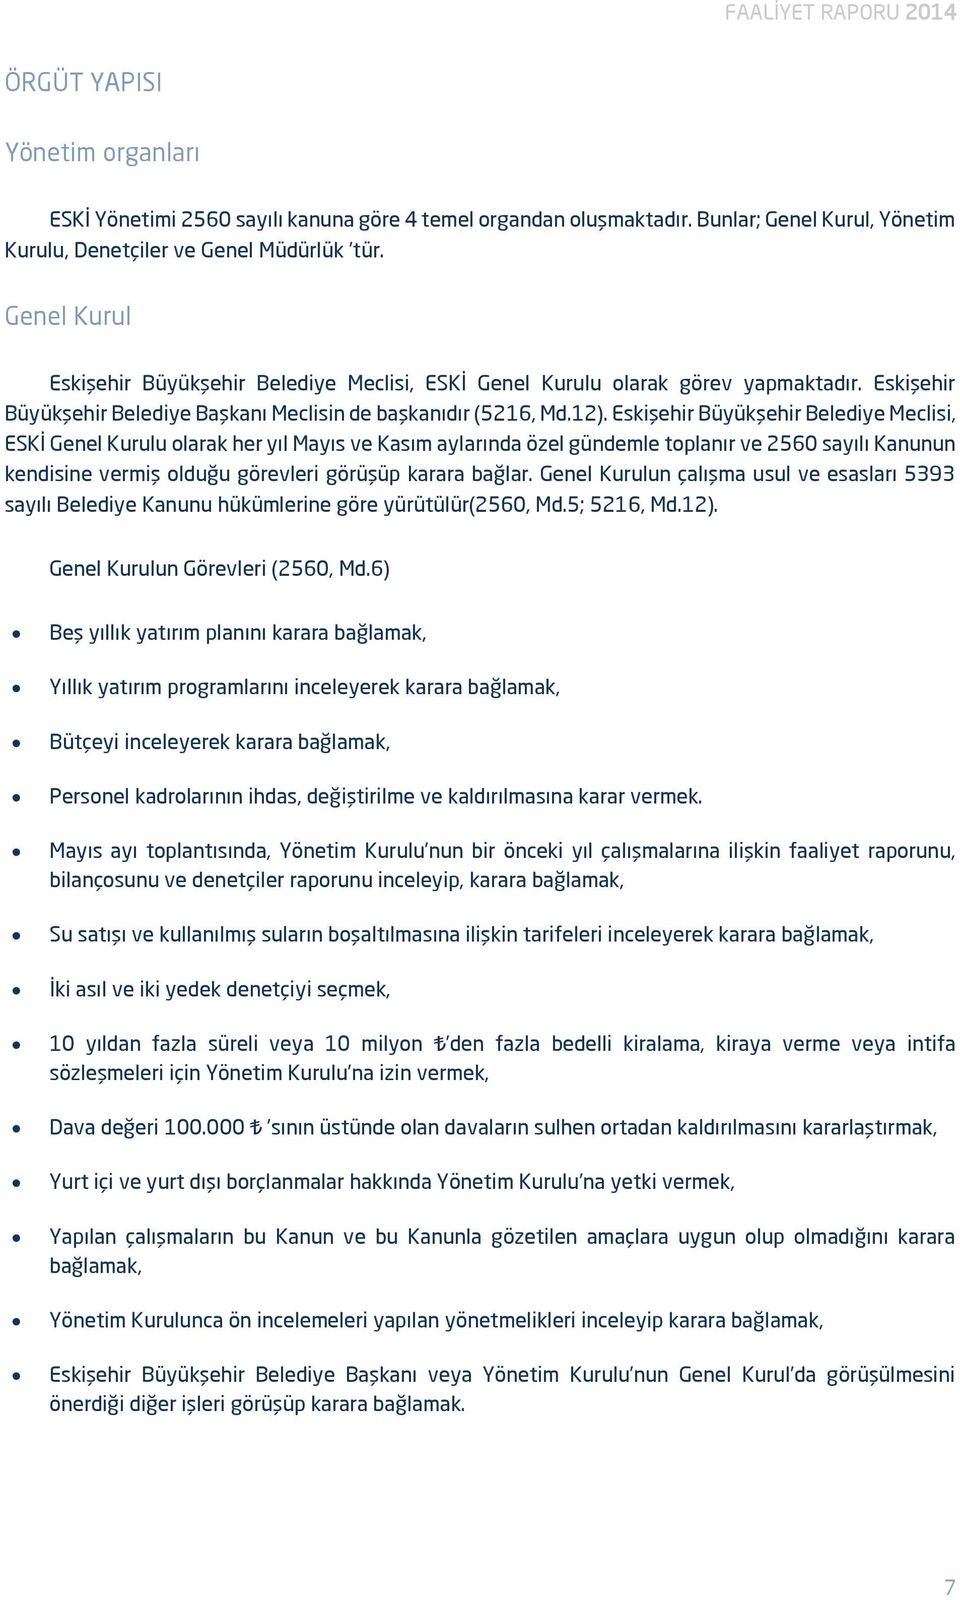 Eskişehir Büyükşehir Belediye Meclisi, ESKİ Genel Kurulu olarak her yıl Mayıs ve Kasım aylarında özel gündemle toplanır ve 2560 sayılı Kanunun kendisine vermiş olduğu görevleri görüşüp karara bağlar.